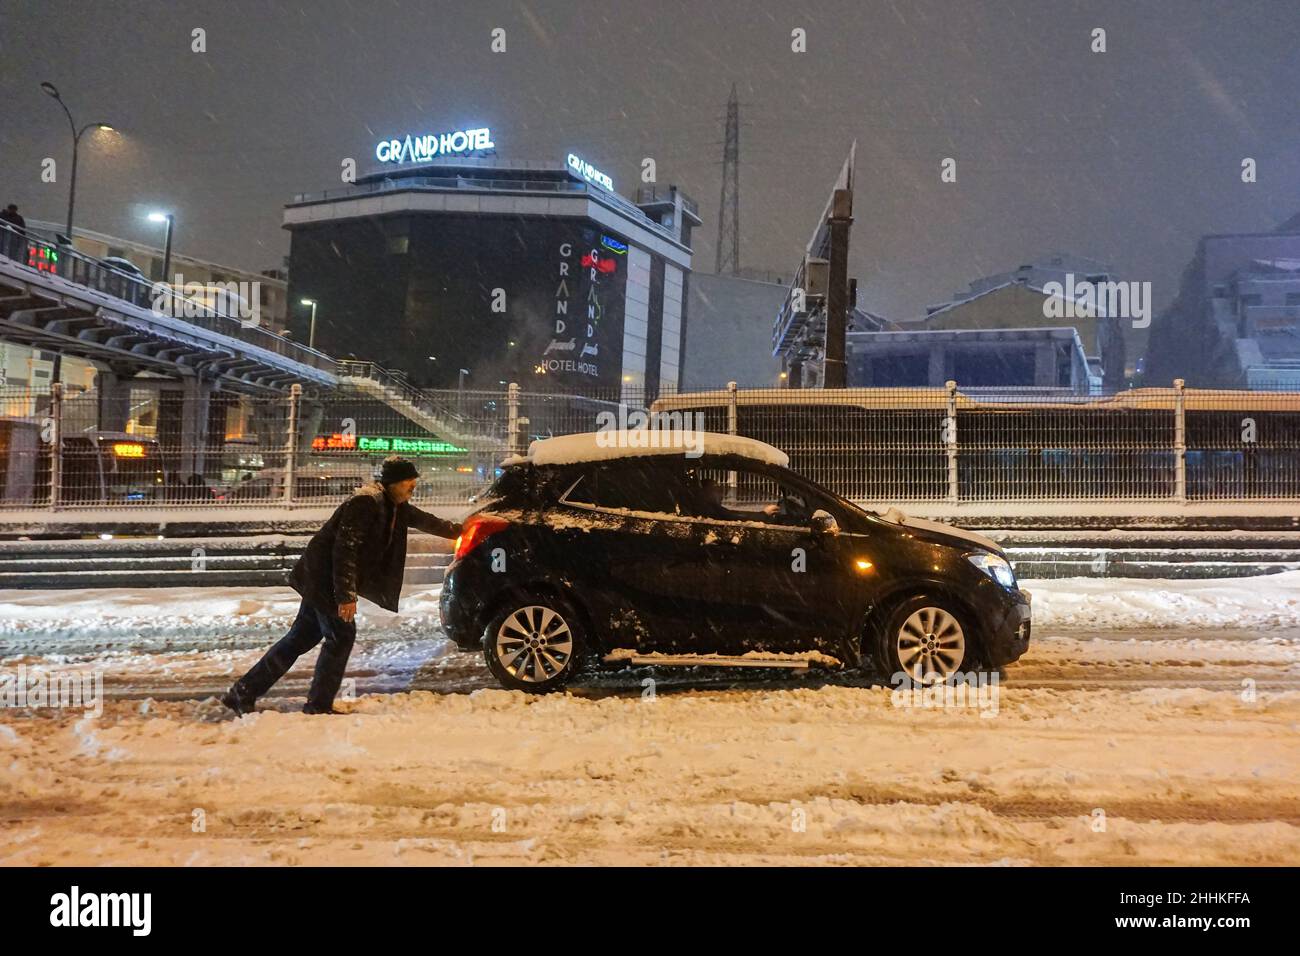 Ein Mann sah ein Auto auf einer schneebedeckten Straße schieben. Der Schneesturm, der in Istanbul am Abend ausbrach, brachte trotz der ergriffenen Maßnahmen das Leben zum Stillstand. Während die Metrobus-Verbindungen für kurze Zeit unterbrochen wurden, war die Autobahn D-100 am Standort Haramidere wegen des starken Schneefalls für den Verkehr gesperrt. Viele Fahrzeuge blieben stundenlang auf der Straße. Bürger mobilisierten, um die Fahrzeuge zu retten. Das Büro des Gouverneurs von Istanbul warnte die Fahrer, dass sie die Stadt nicht von Thrakien aus betreten könnten, einer Region, die sich über den europäischen Teil der Türkei bis zur westlichen Grenze zu Bulgarien und Griechenland erstreckt. Stockfoto